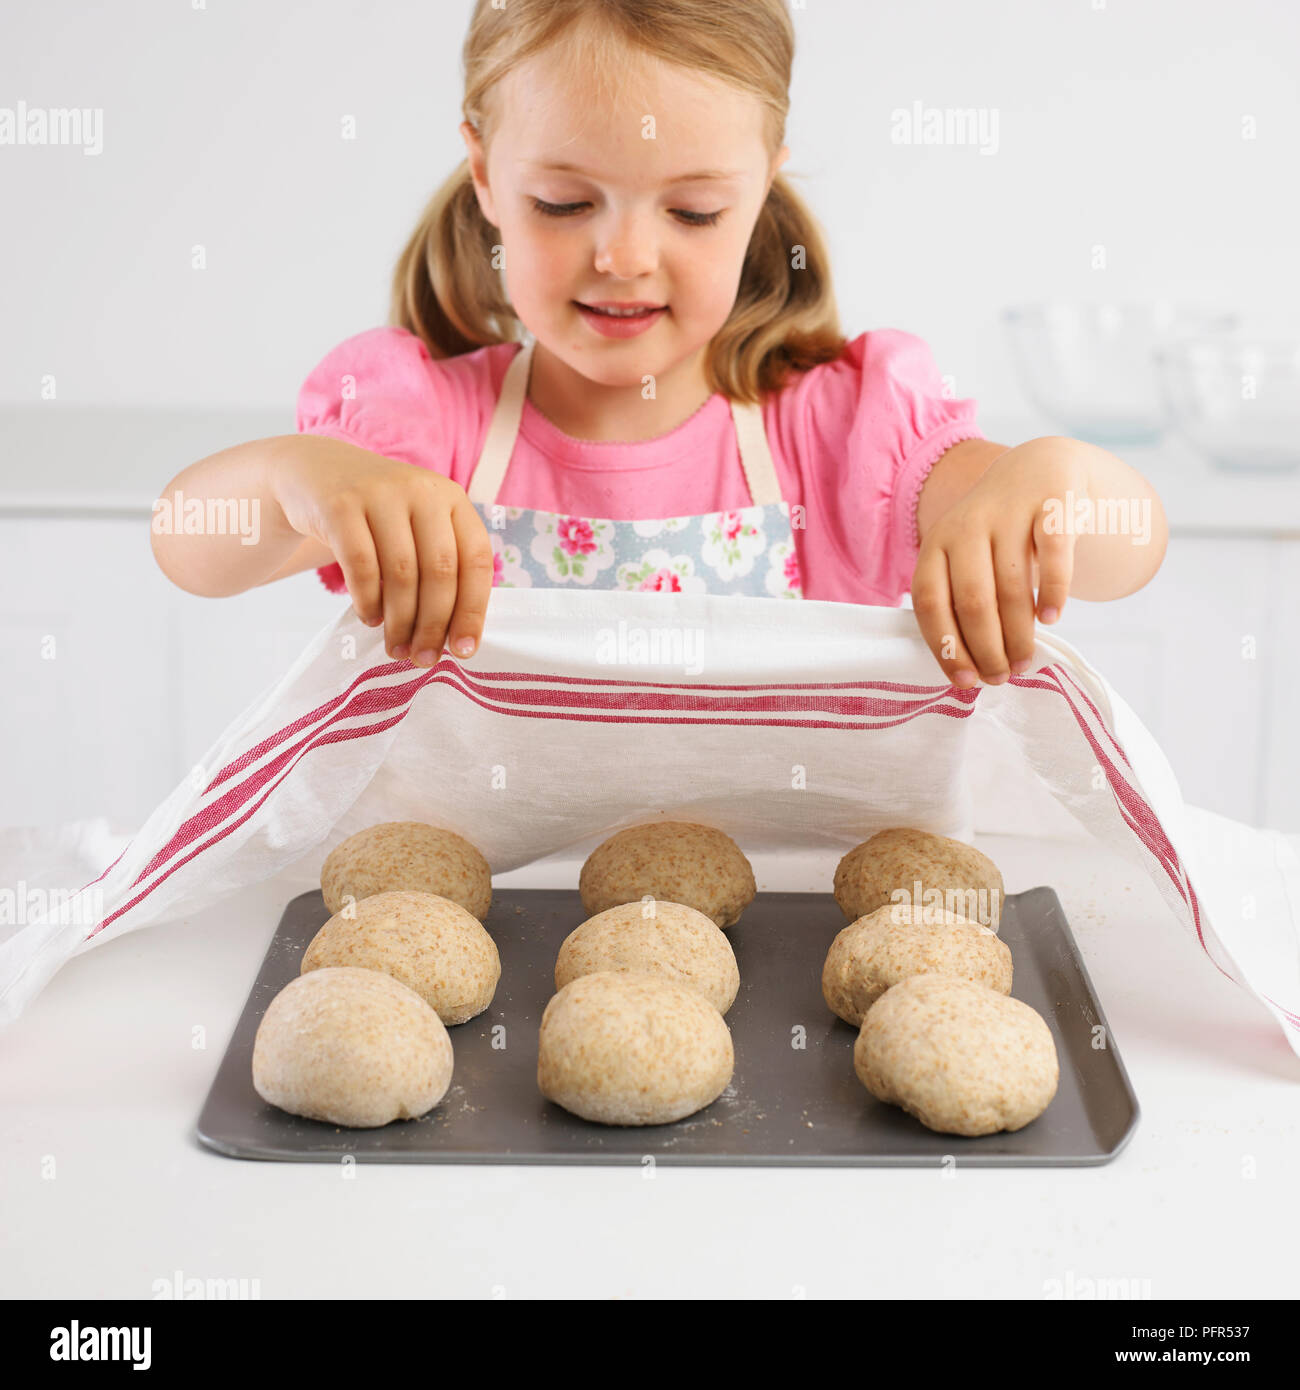 Fille de bac couvrant des petits pains cuits avec un torchon, 5 ans Banque D'Images